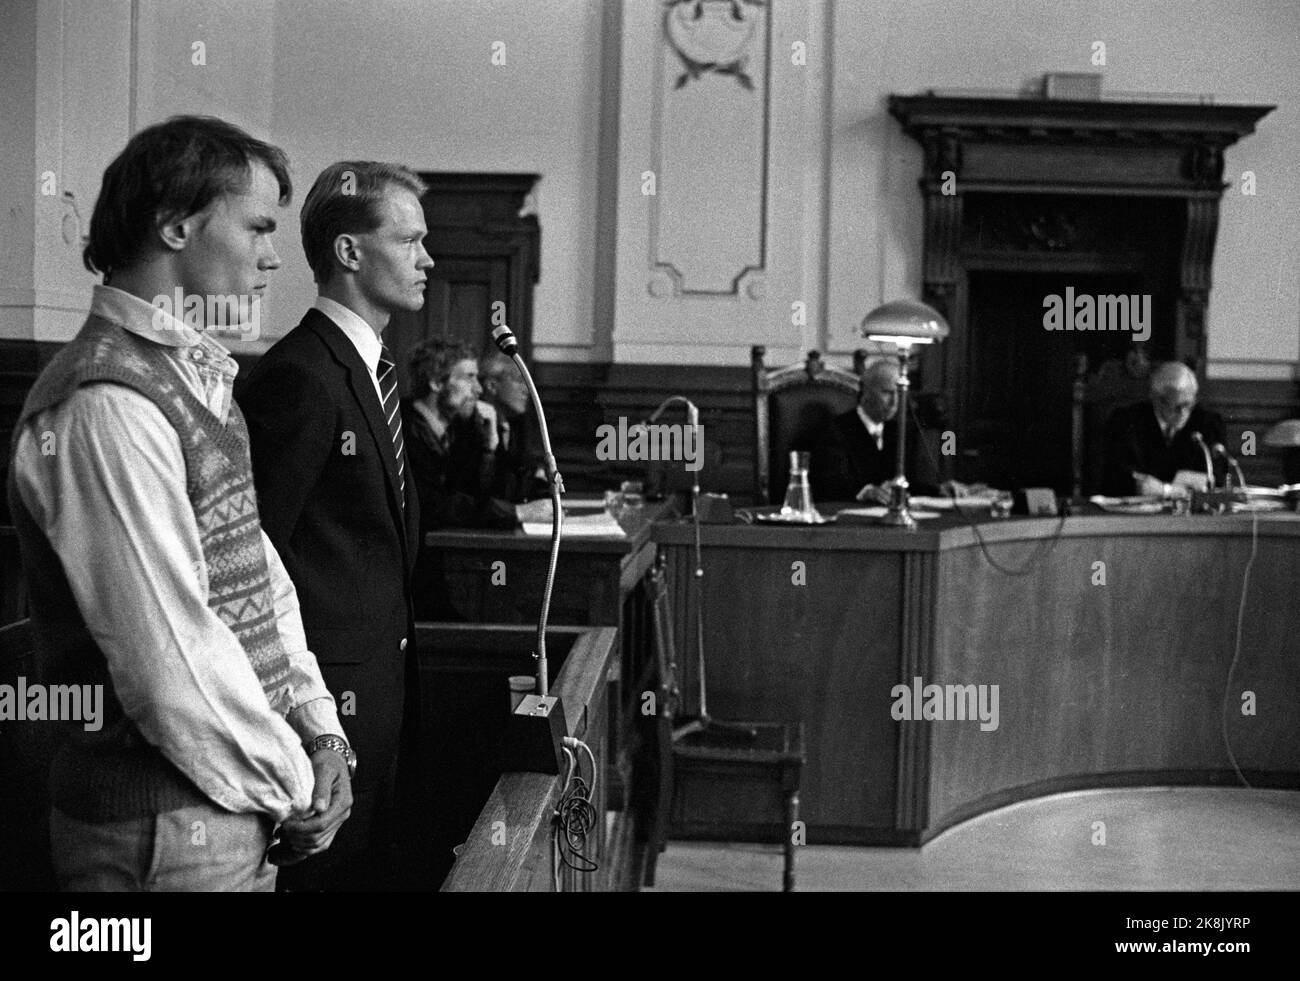 Oslo 19800523. Sentenza nella causa contro Petter Kristian Kyvik, di 20 anni, accusato di lanciare bombe sulla terrazza del re e il treno del 1 maggio al professionista 1 maggio Front nel 1979. Kyvik (t.H.) è stato condannato a cinque anni di prigione per l'attacco di bomba, mentre il co-imputato Kåre Grüner ha ottenuto 120 giorni di prigione Foto Erik Thorberg / NTB / NTB Foto Stock